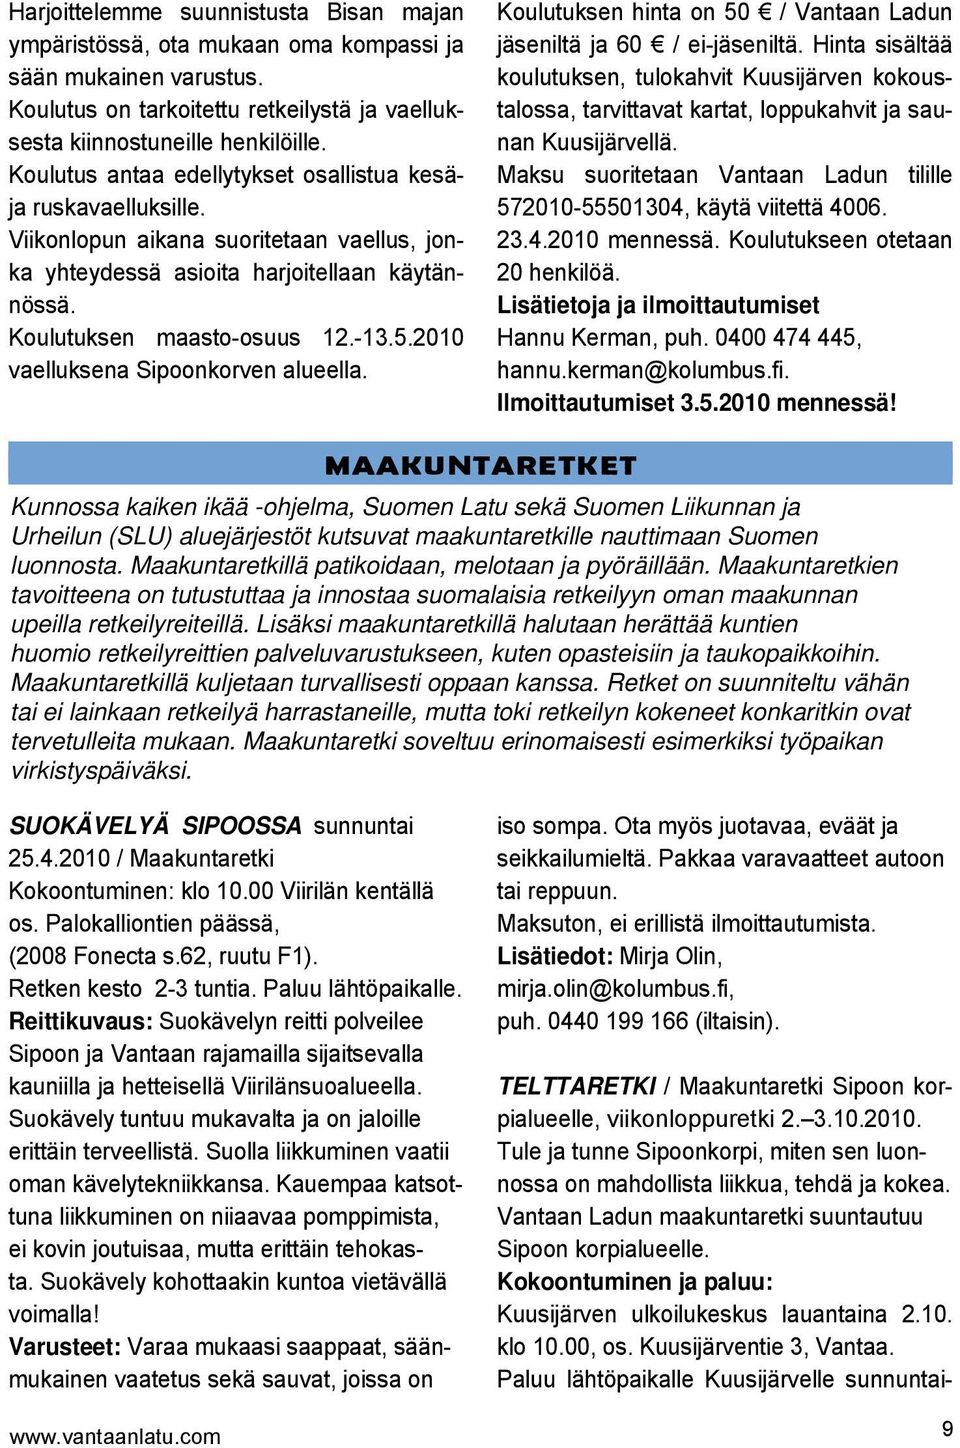 2010 vaelluksena Sipoonkorven alueella. Koulutuksen hinta on 50 / Vantaan Ladun jäseniltä ja 60 / ei-jäseniltä.